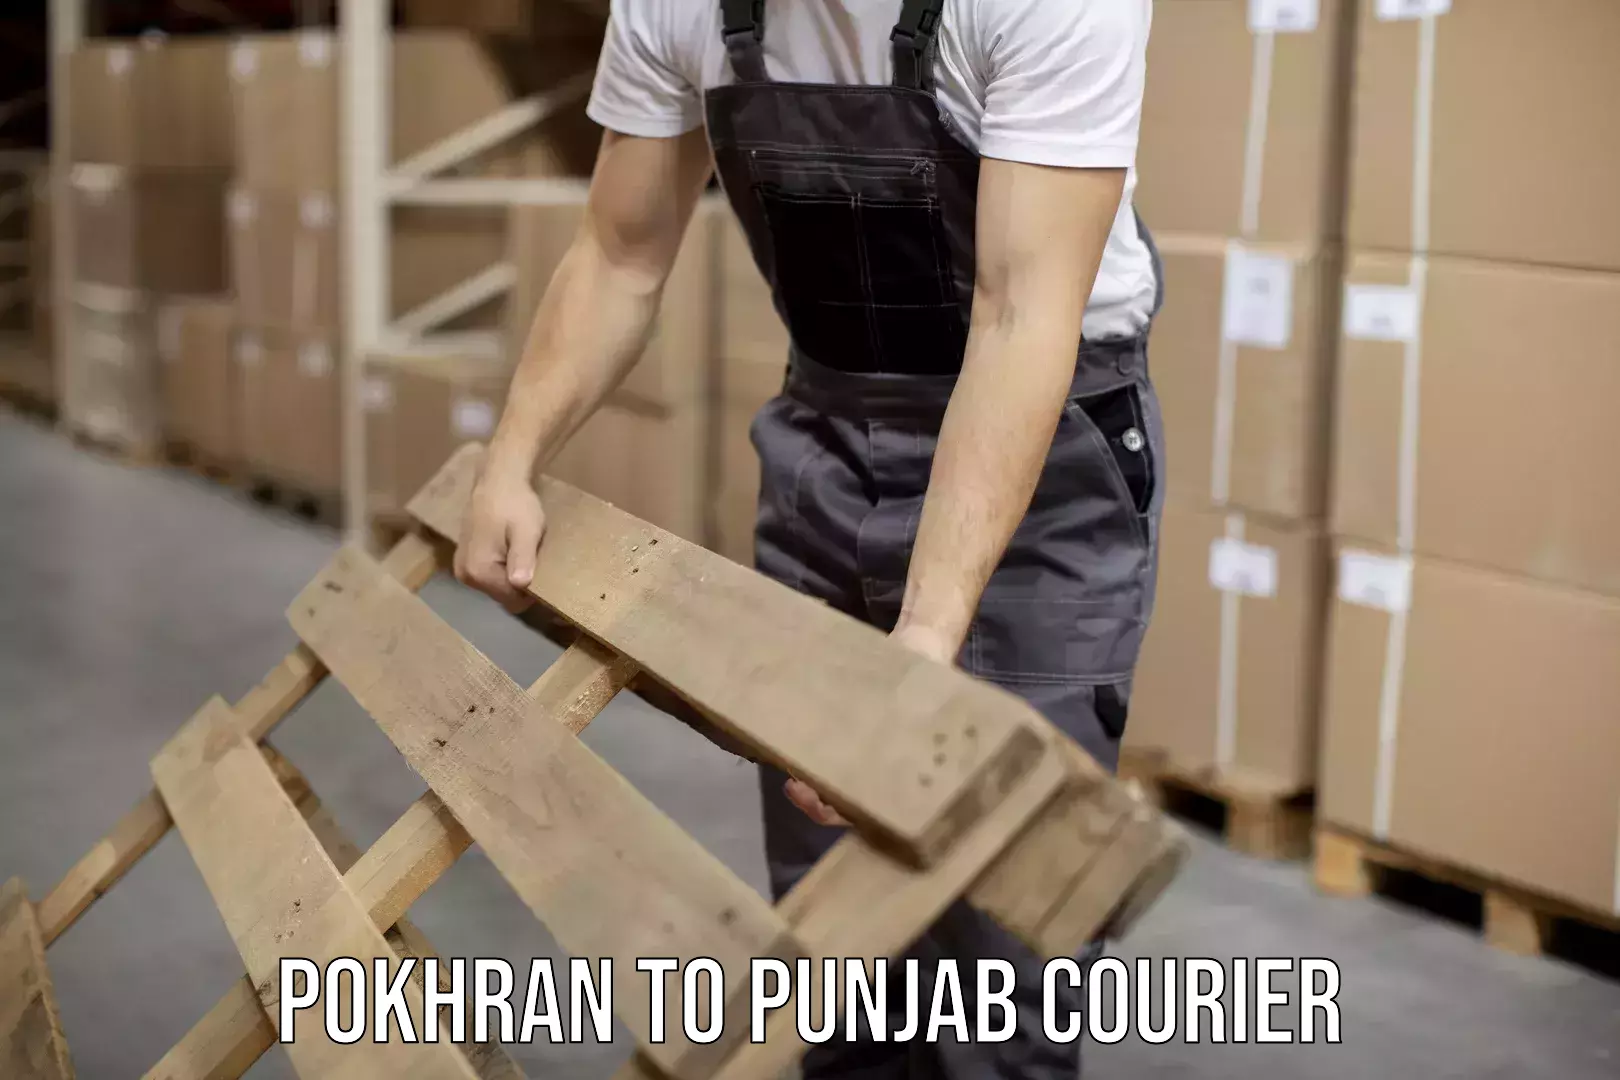 Quick parcel dispatch Pokhran to Punjab